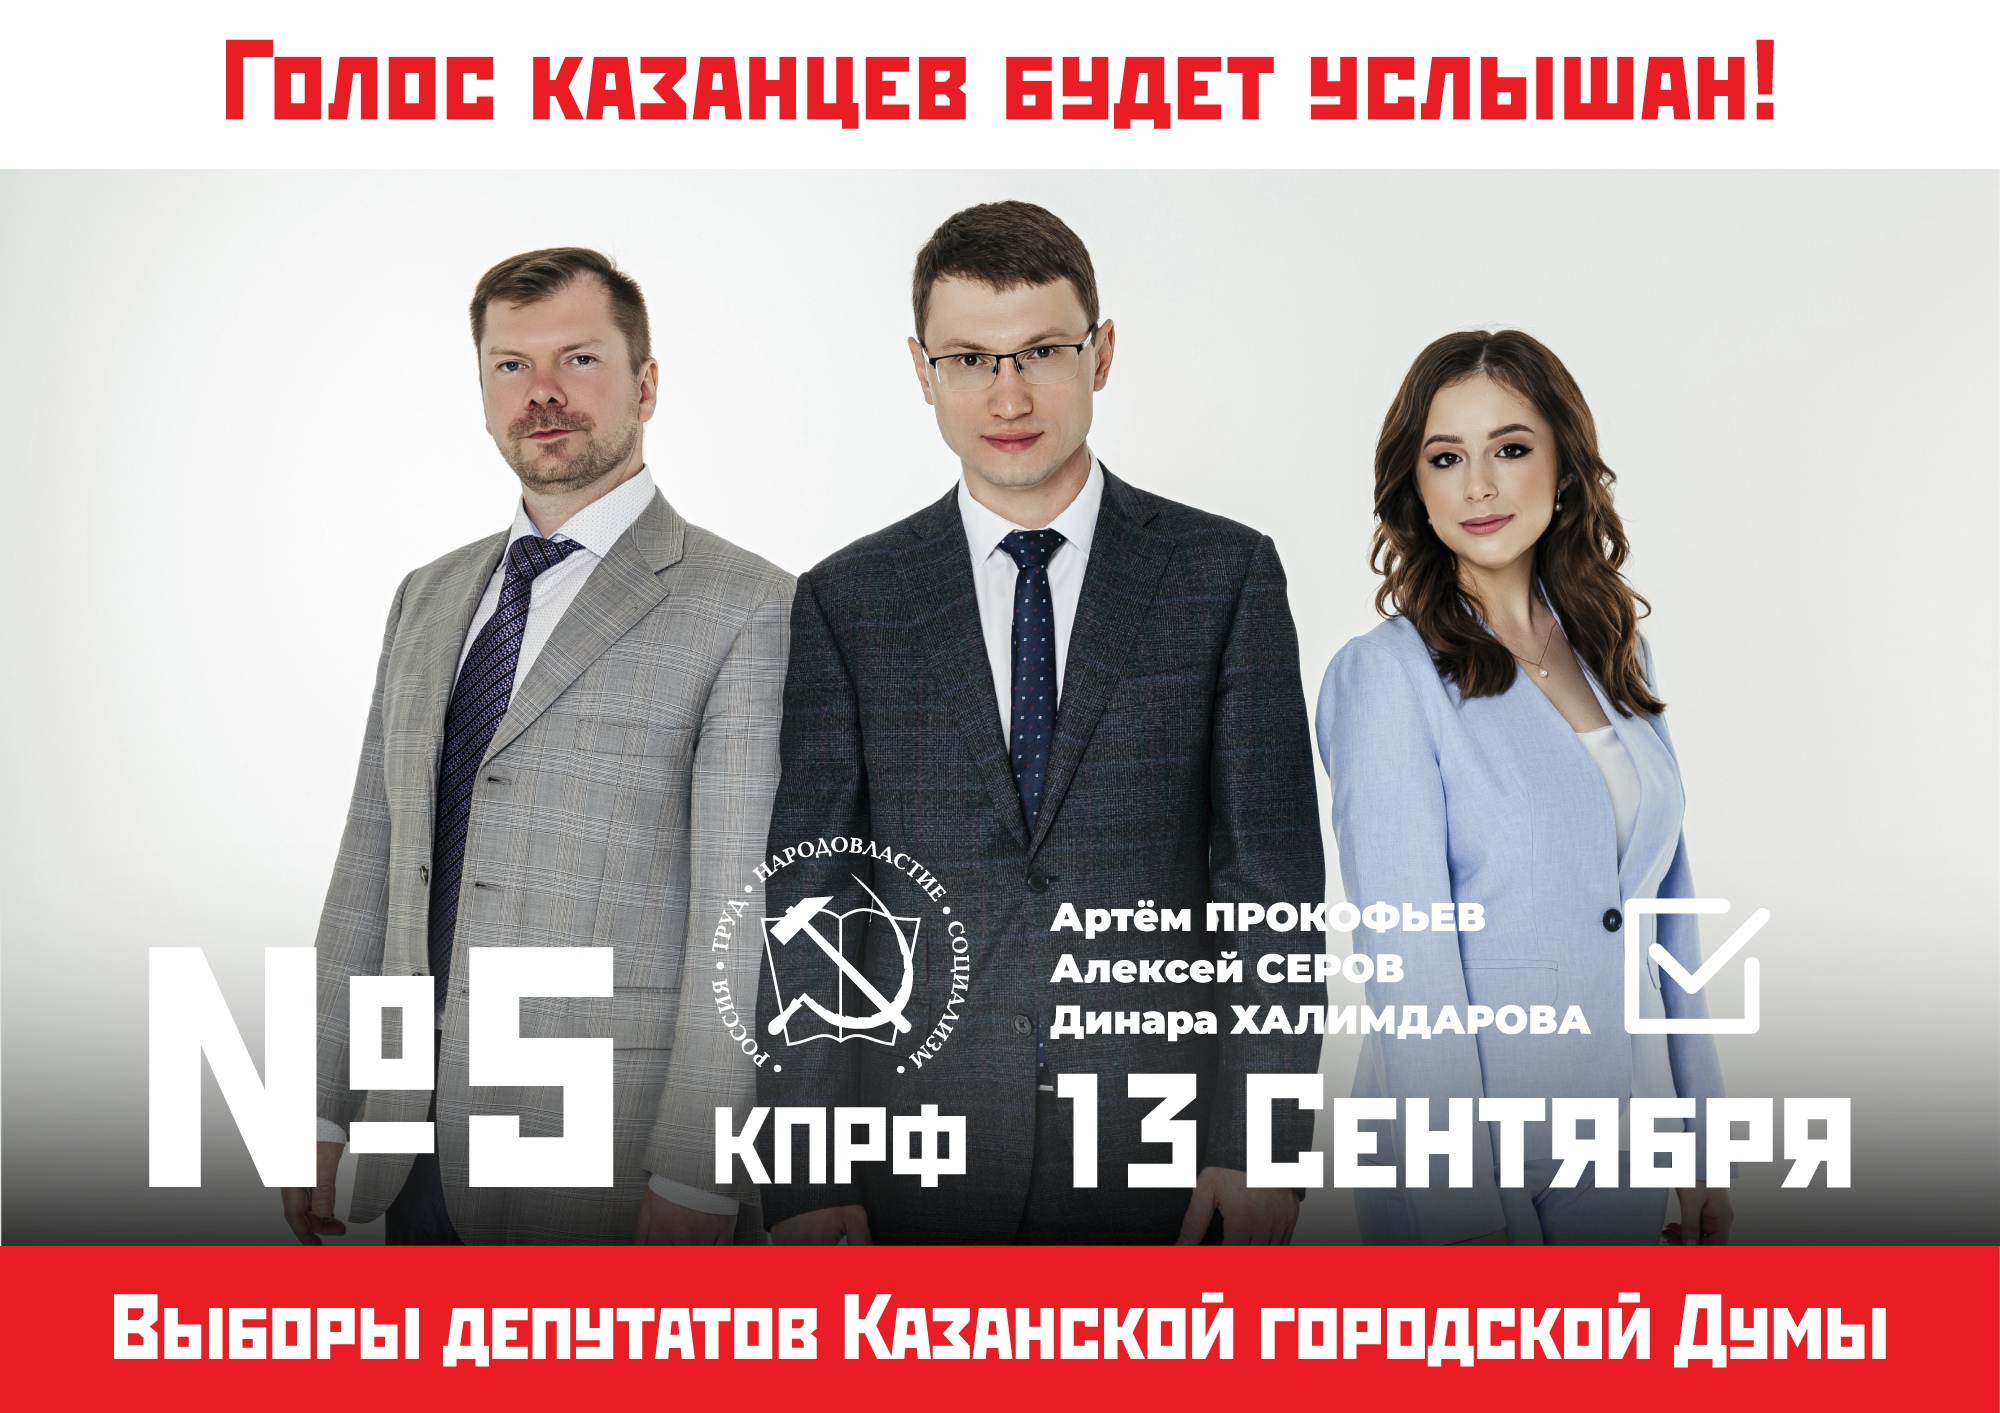 Друзья! Предвыборная кампания в Казгордуму подходит к своему финалу.